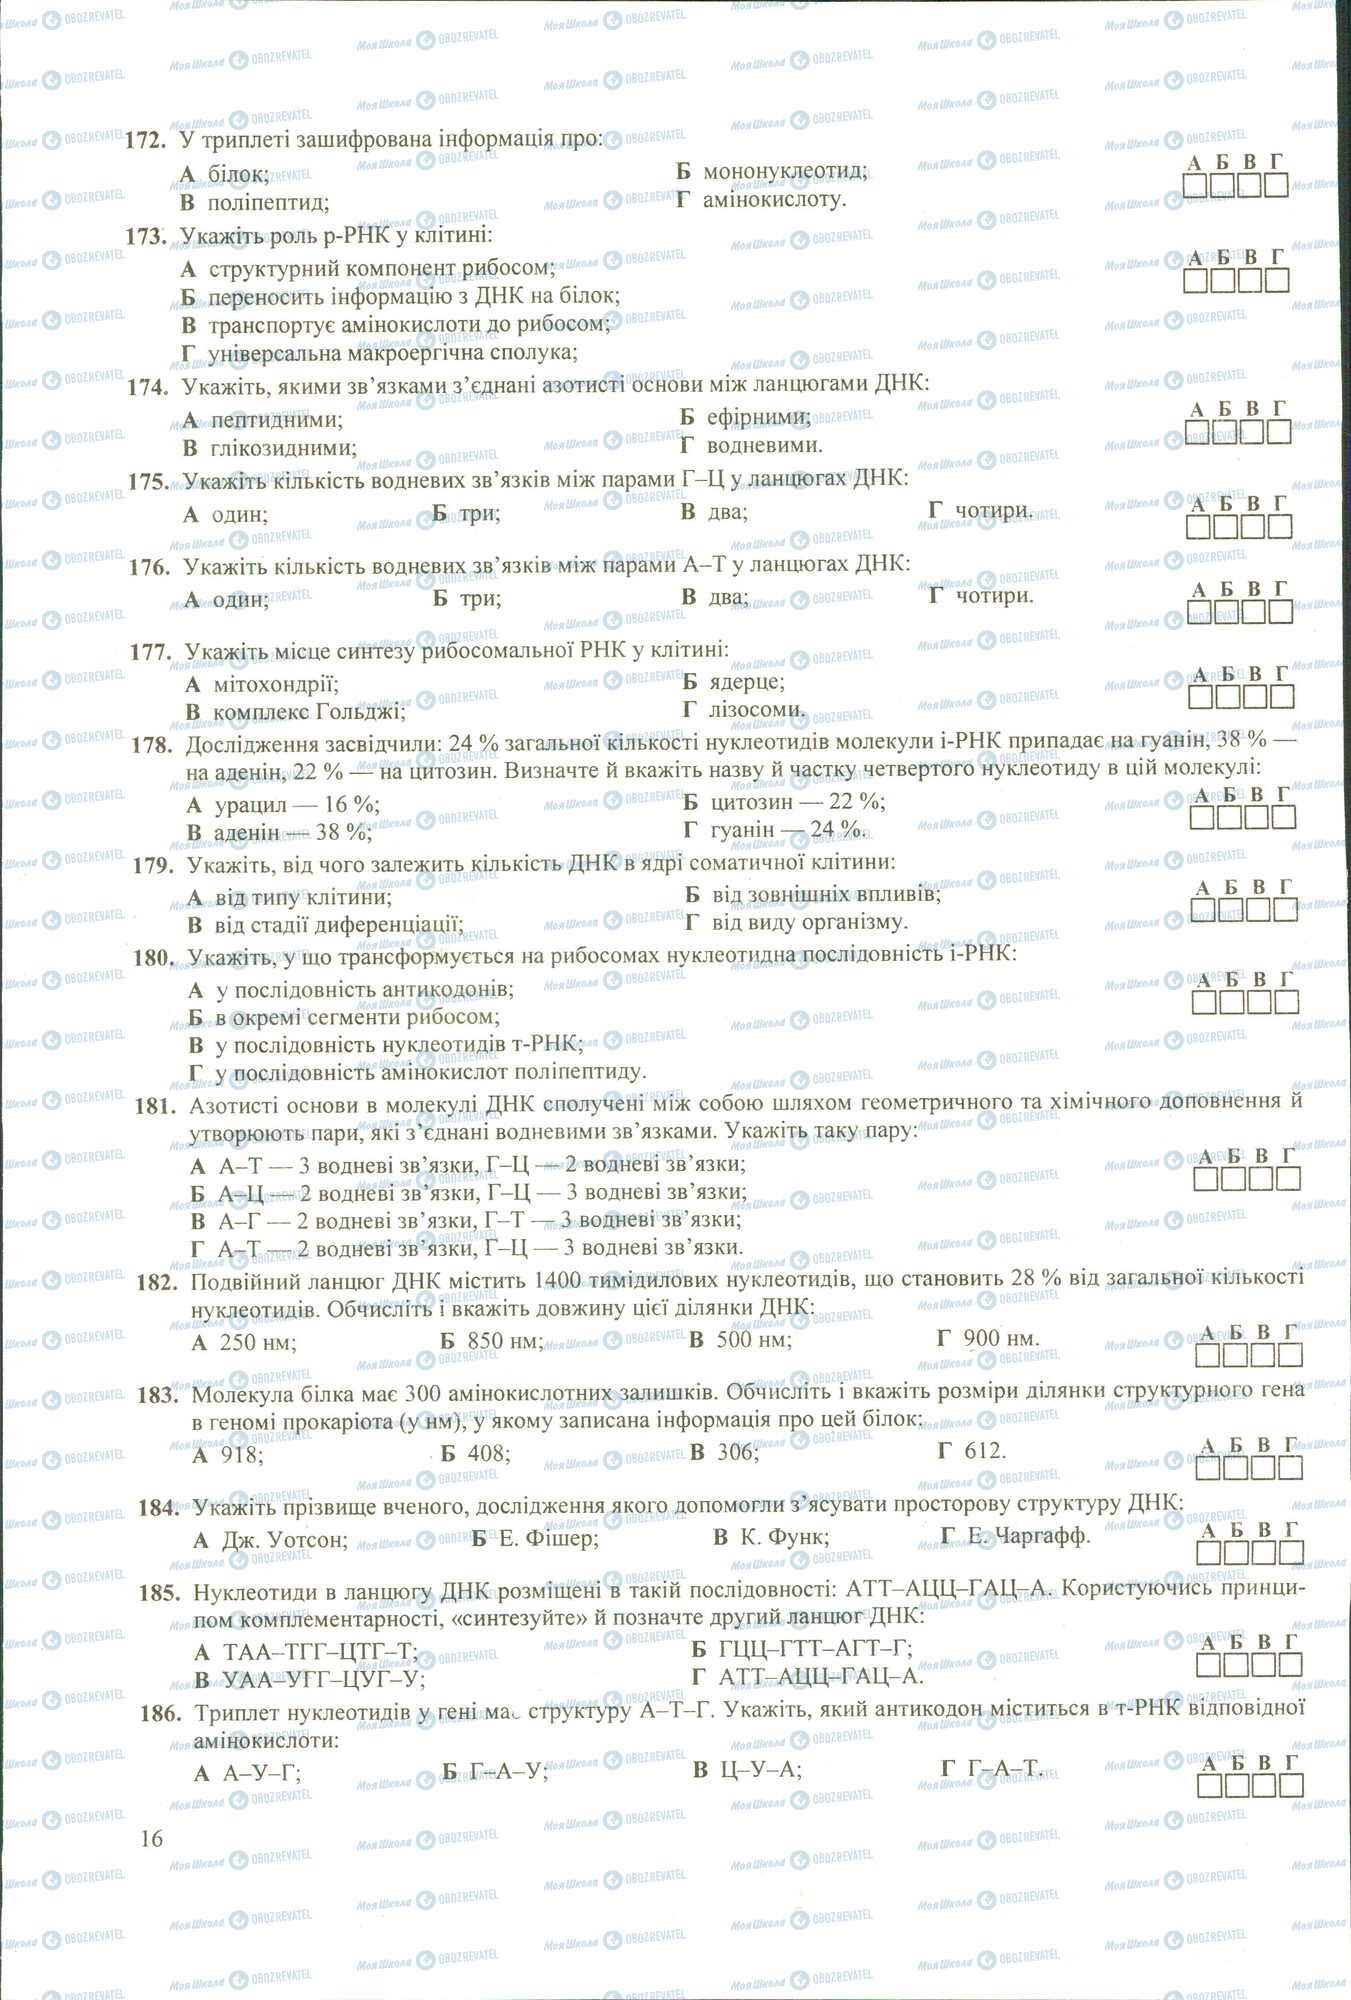 ЗНО Биология 11 класс страница 172-186